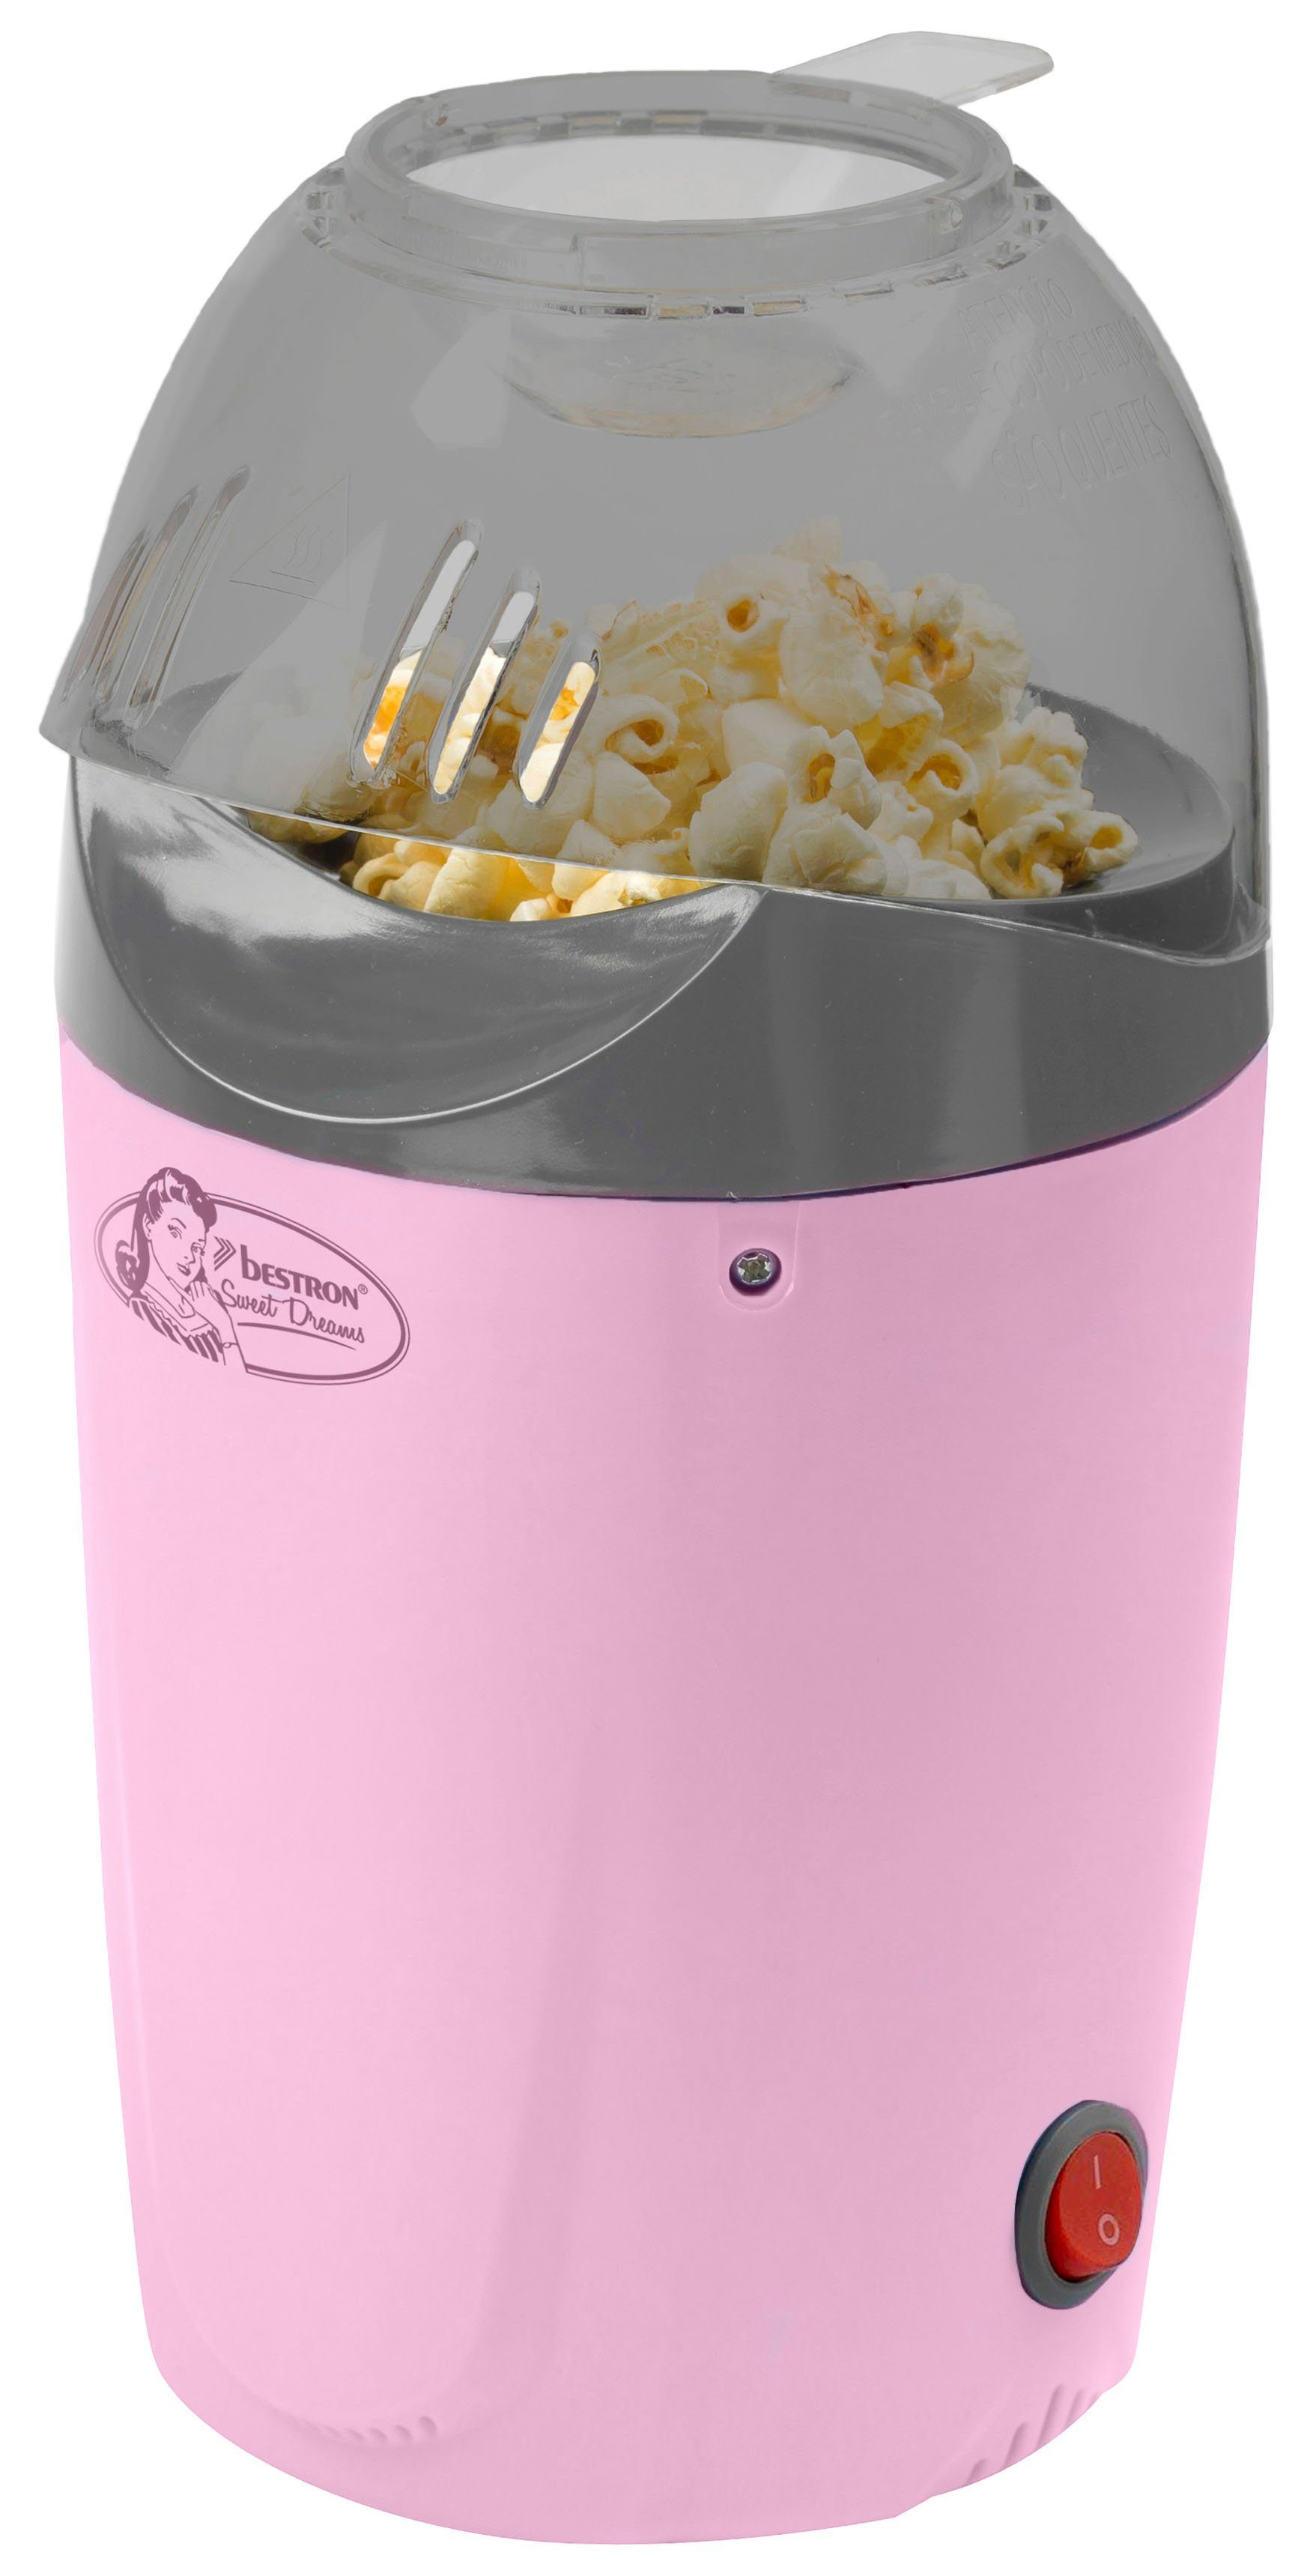 bestron Popcornmaschine APC1007P, für bis zu 50 g Popcornmais, für Popcorn  in 2 Minuten, fettfreie Zubereitung, 1200 Watt, Rosa online kaufen | OTTO